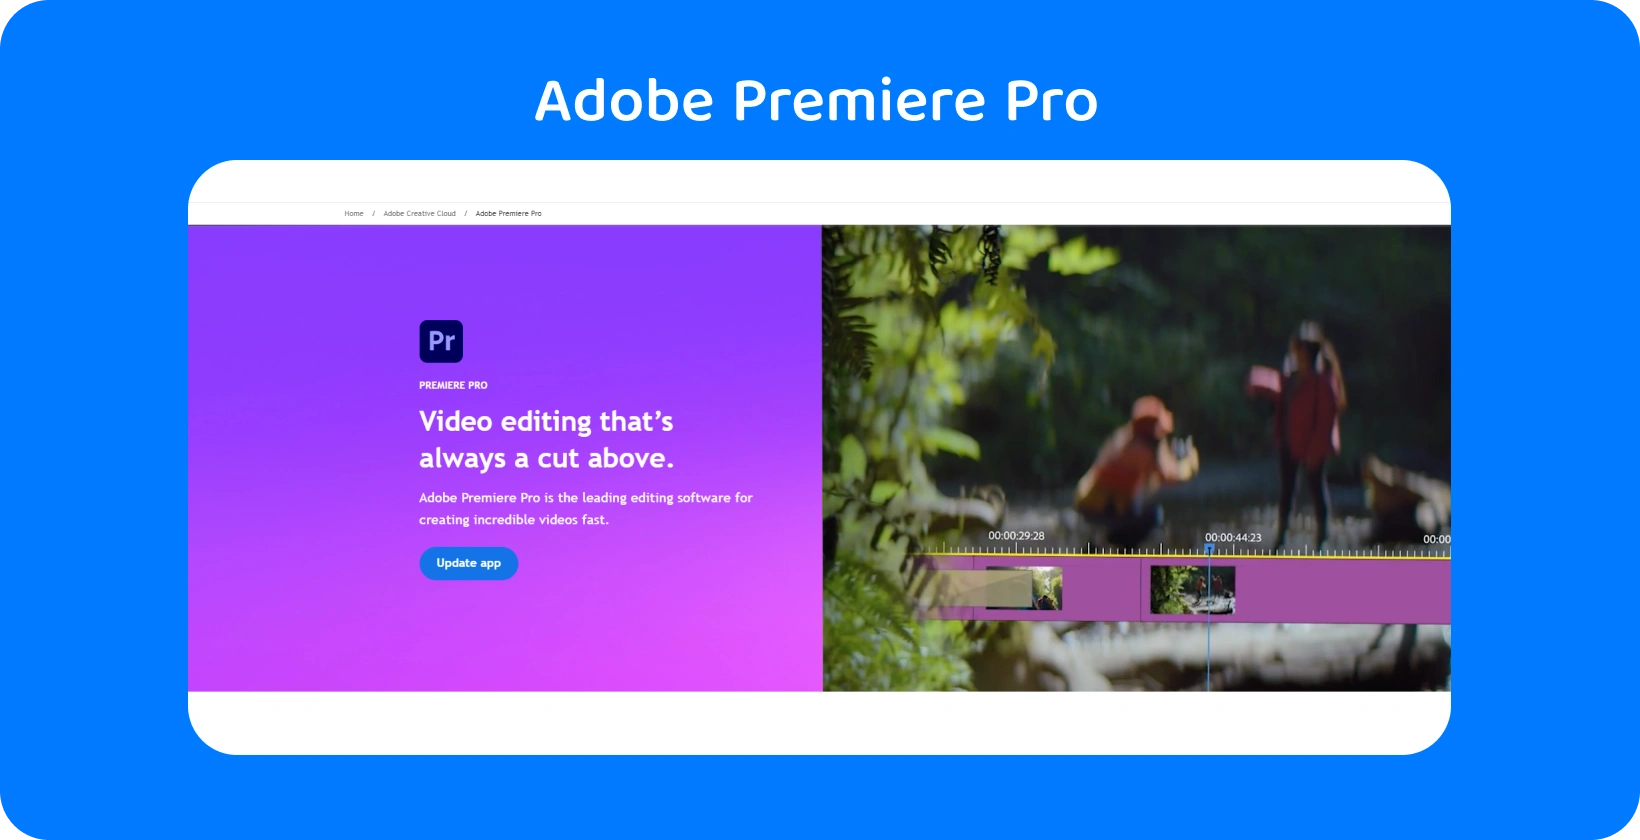 Adobe Premiere Pro Pro-gränssnittet visar sina avancerade videoredigeringsfunktioner, perfekt för snabba, exakta redigeringar.